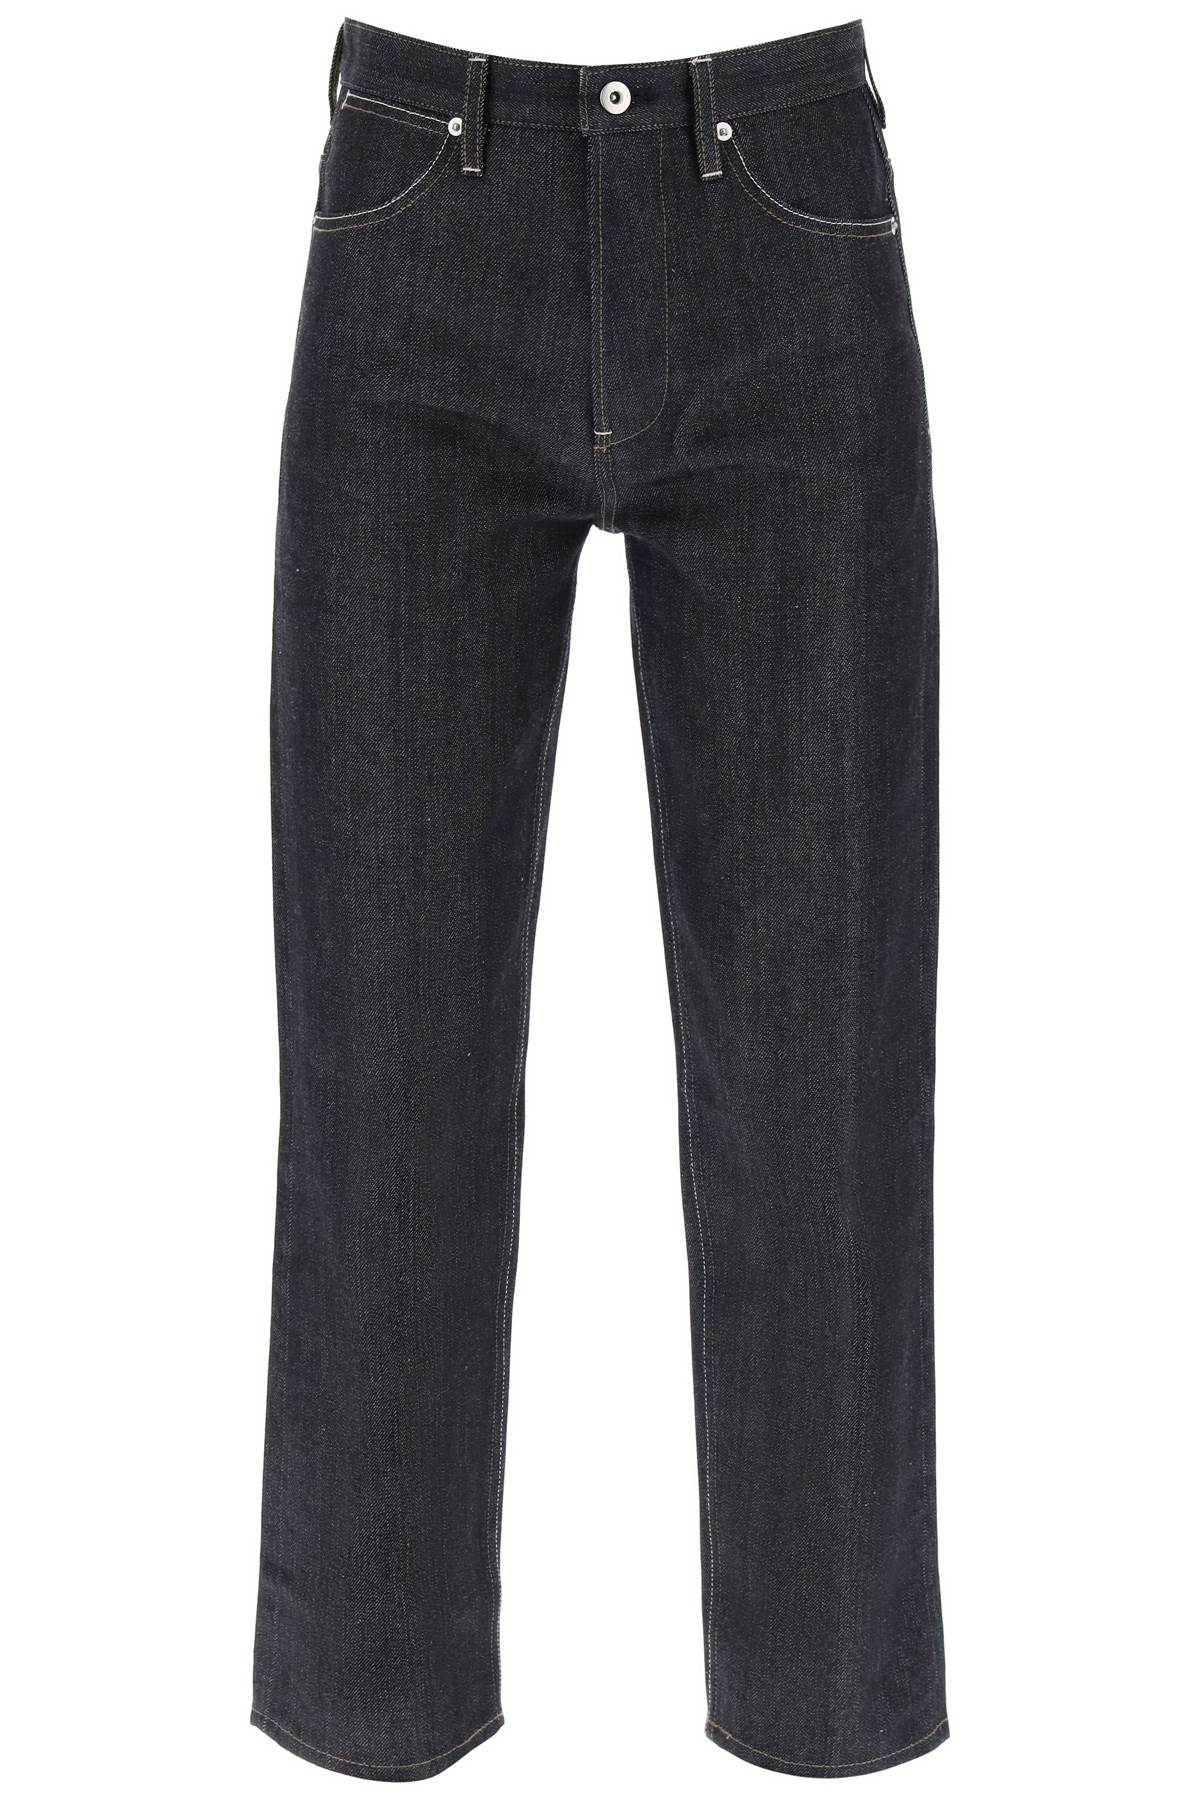 Jil Sander Japanese Denim Regular Jeans For Women In Black